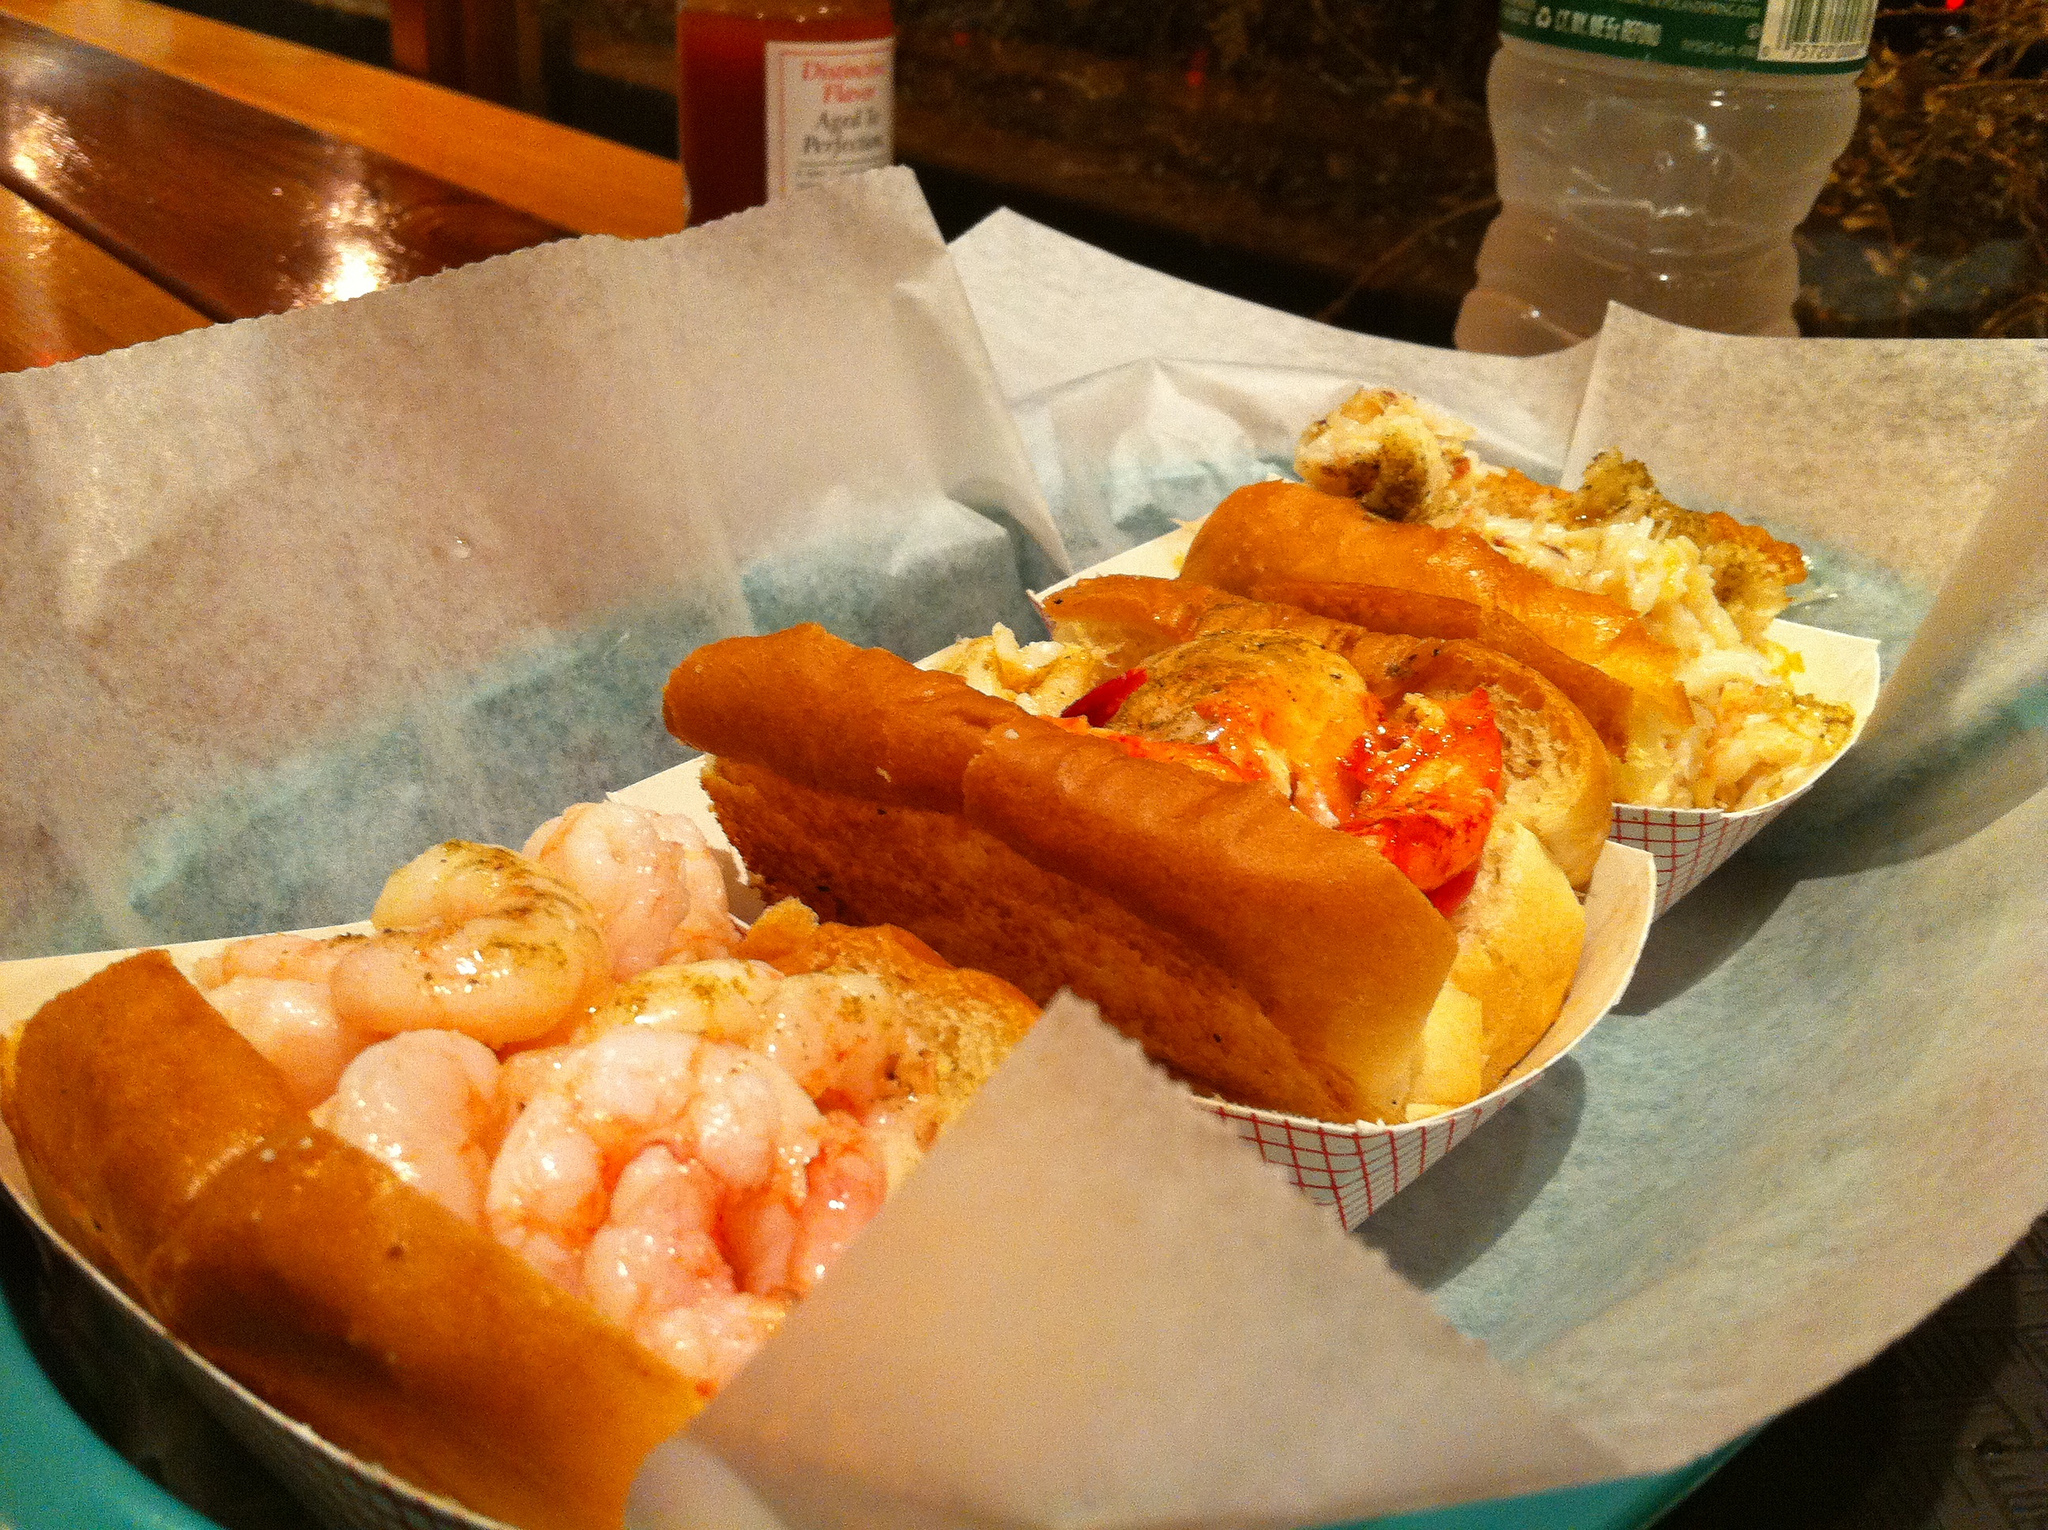 Taste of Maine from Luke's Lobster in New York City.